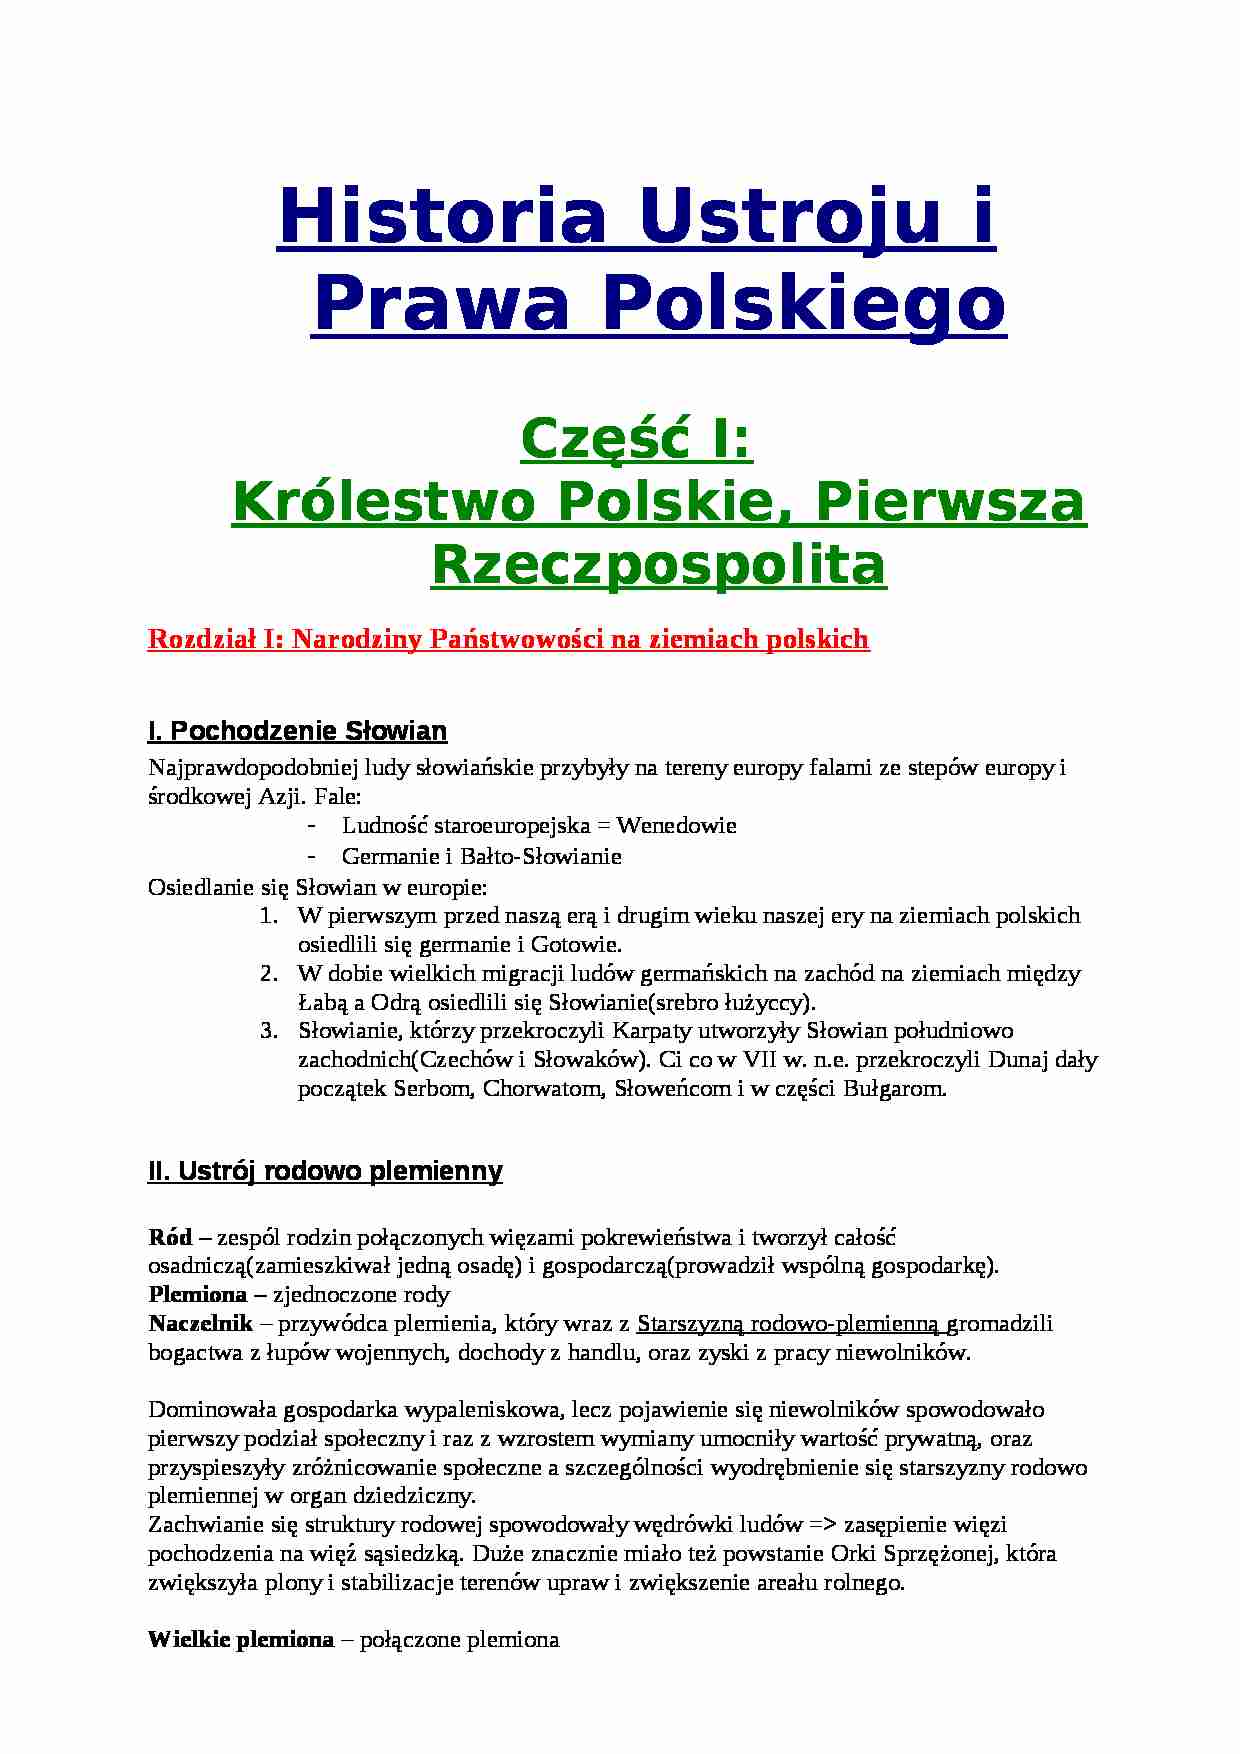 Historia państwa i prawa polskiego - skrypt IV części - strona 1